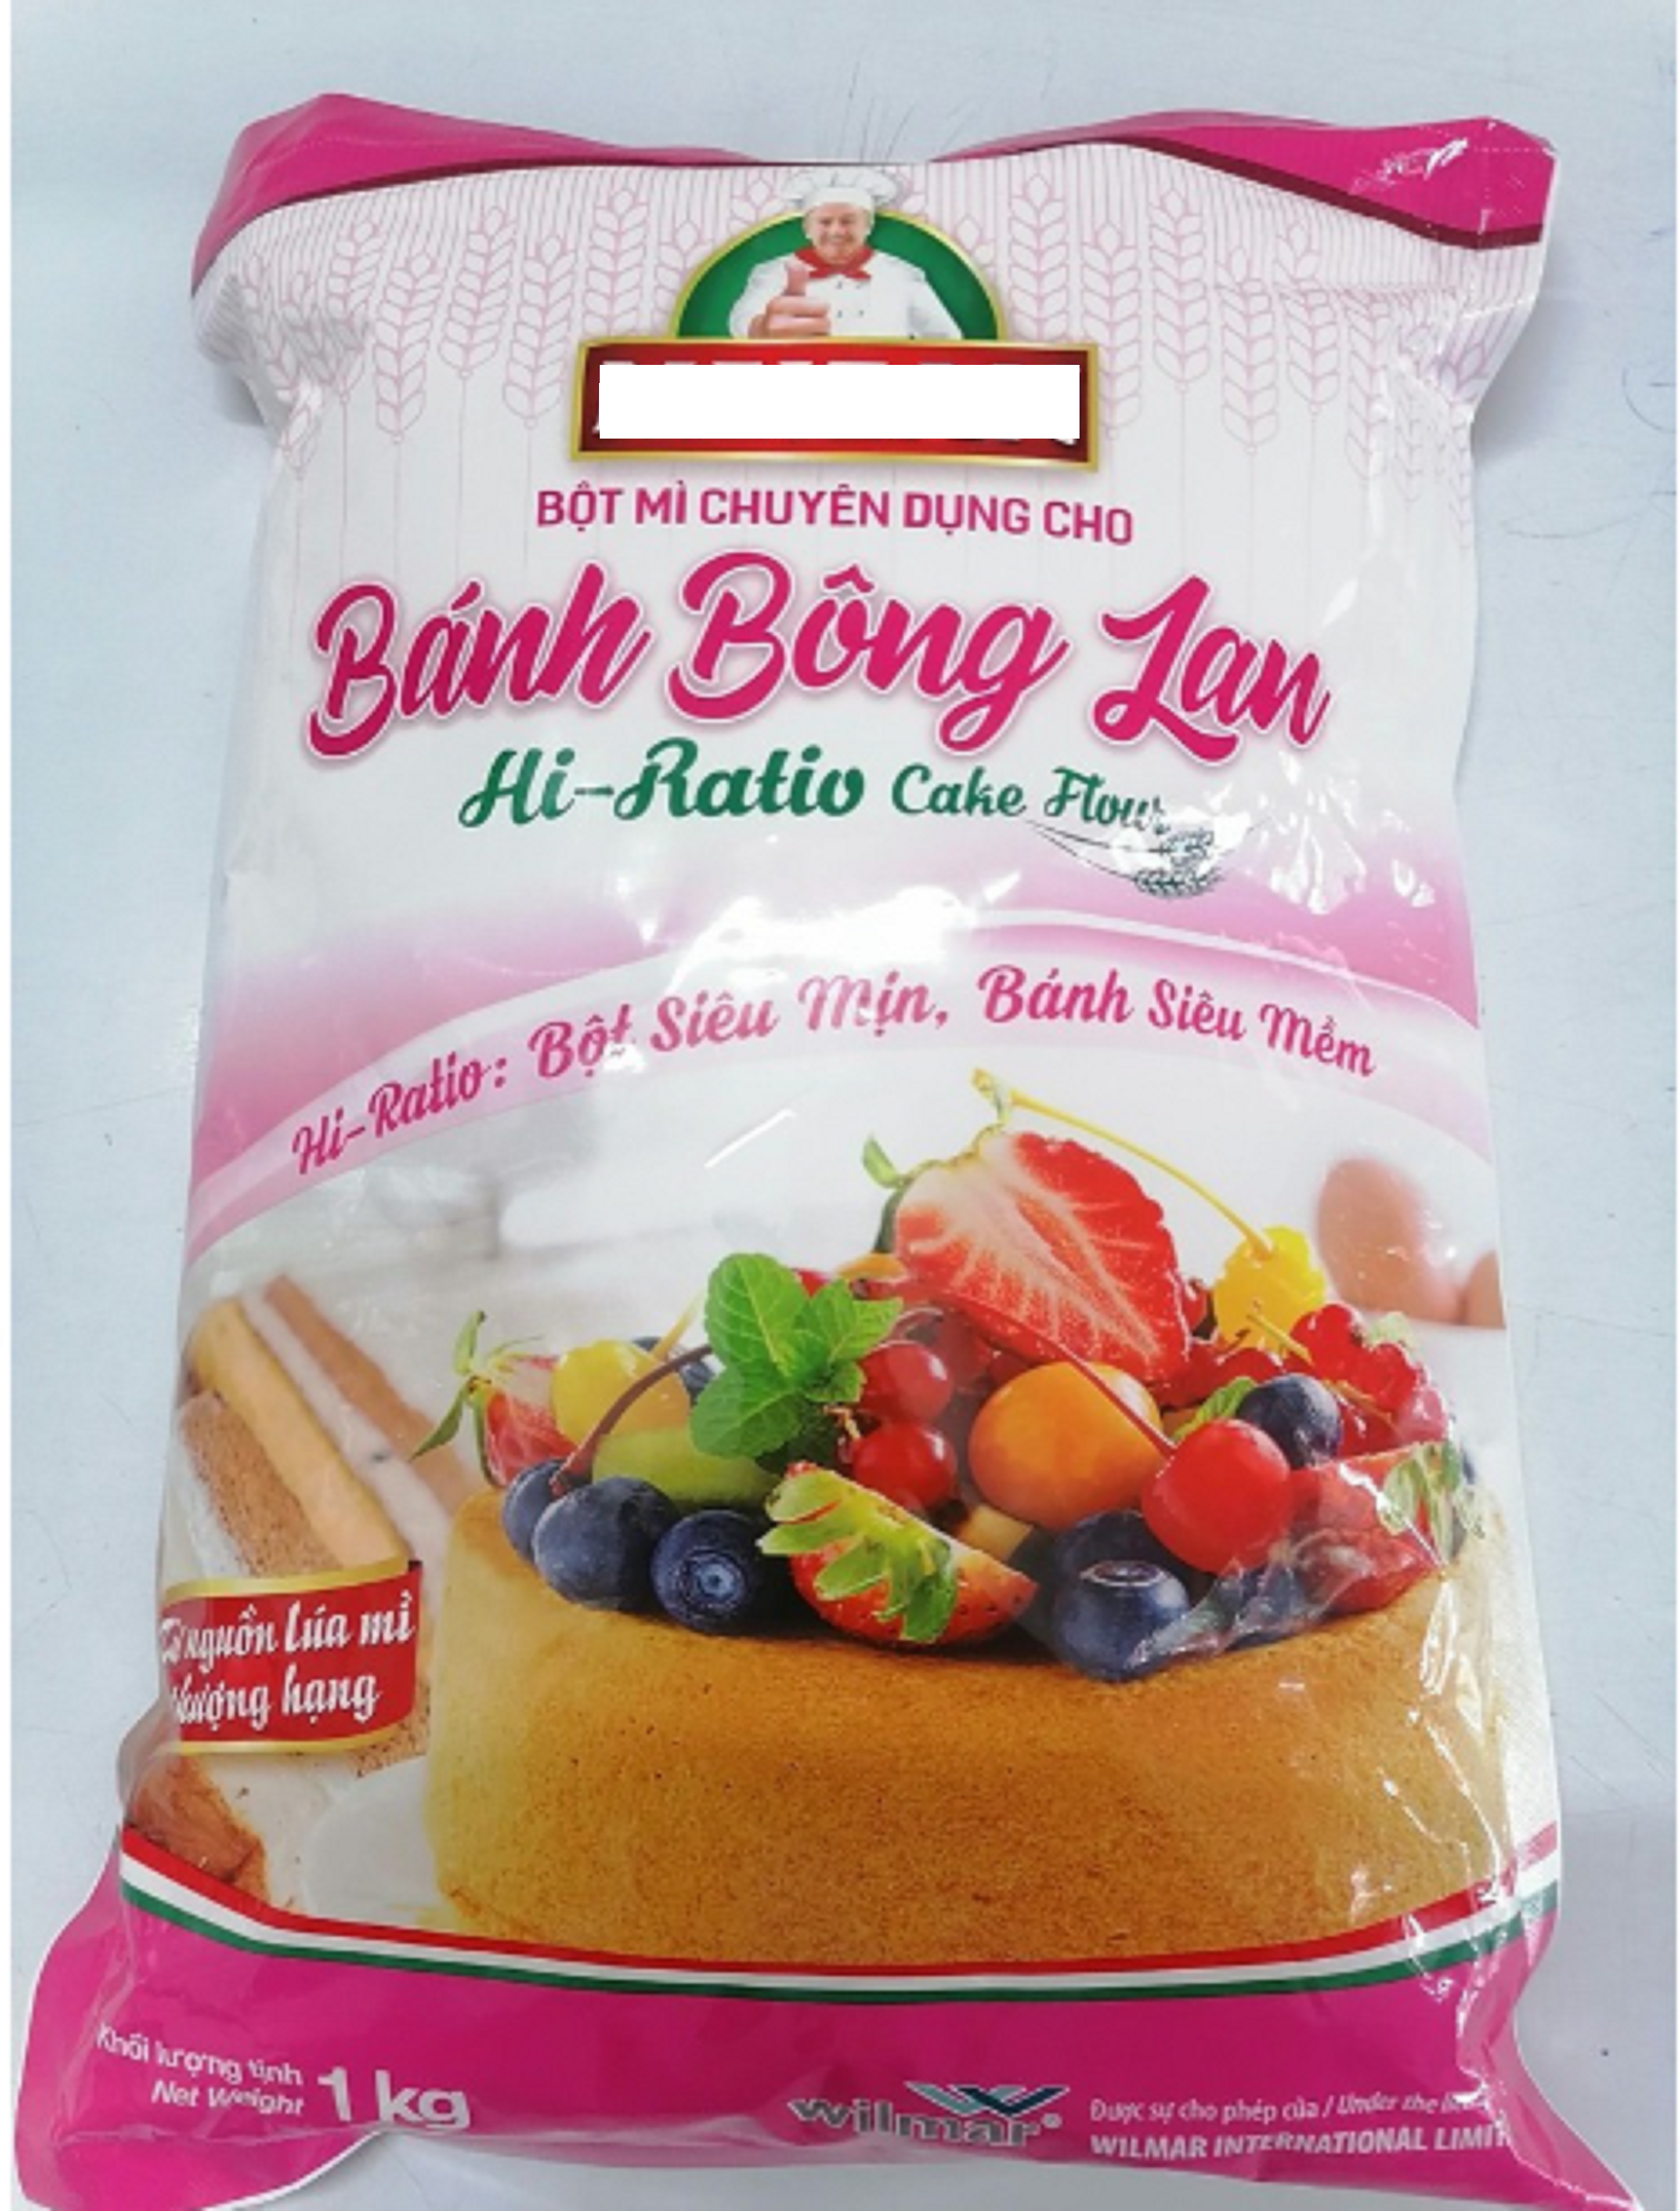 (Gói 1kg) Bột Chuyên Dụng Cho Bánh Bông Lan M.e.izan Hi-Ratio Cake Flour